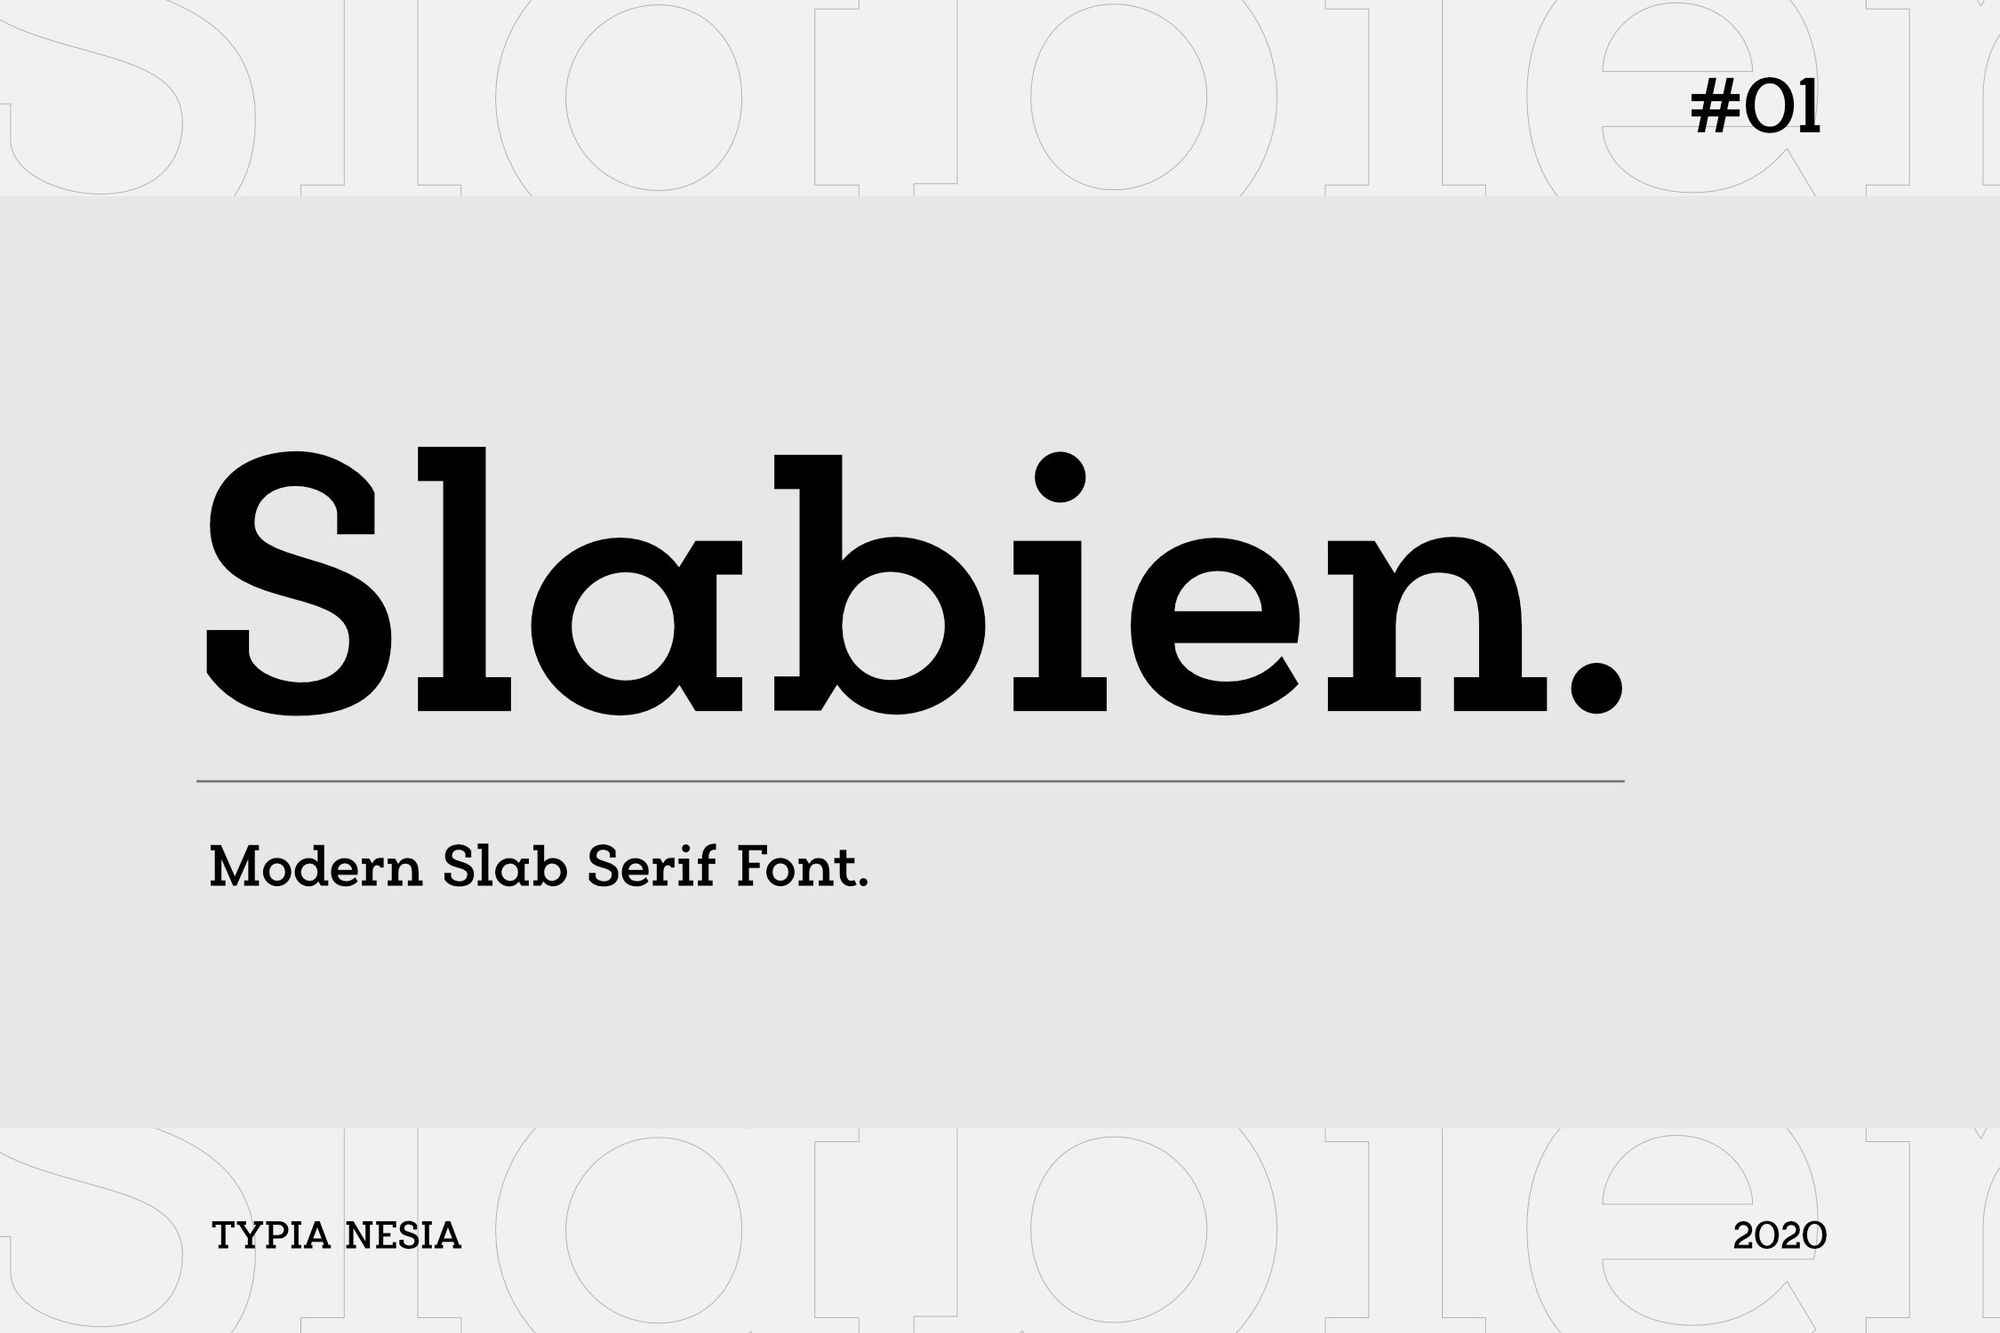 A modern slab serif font